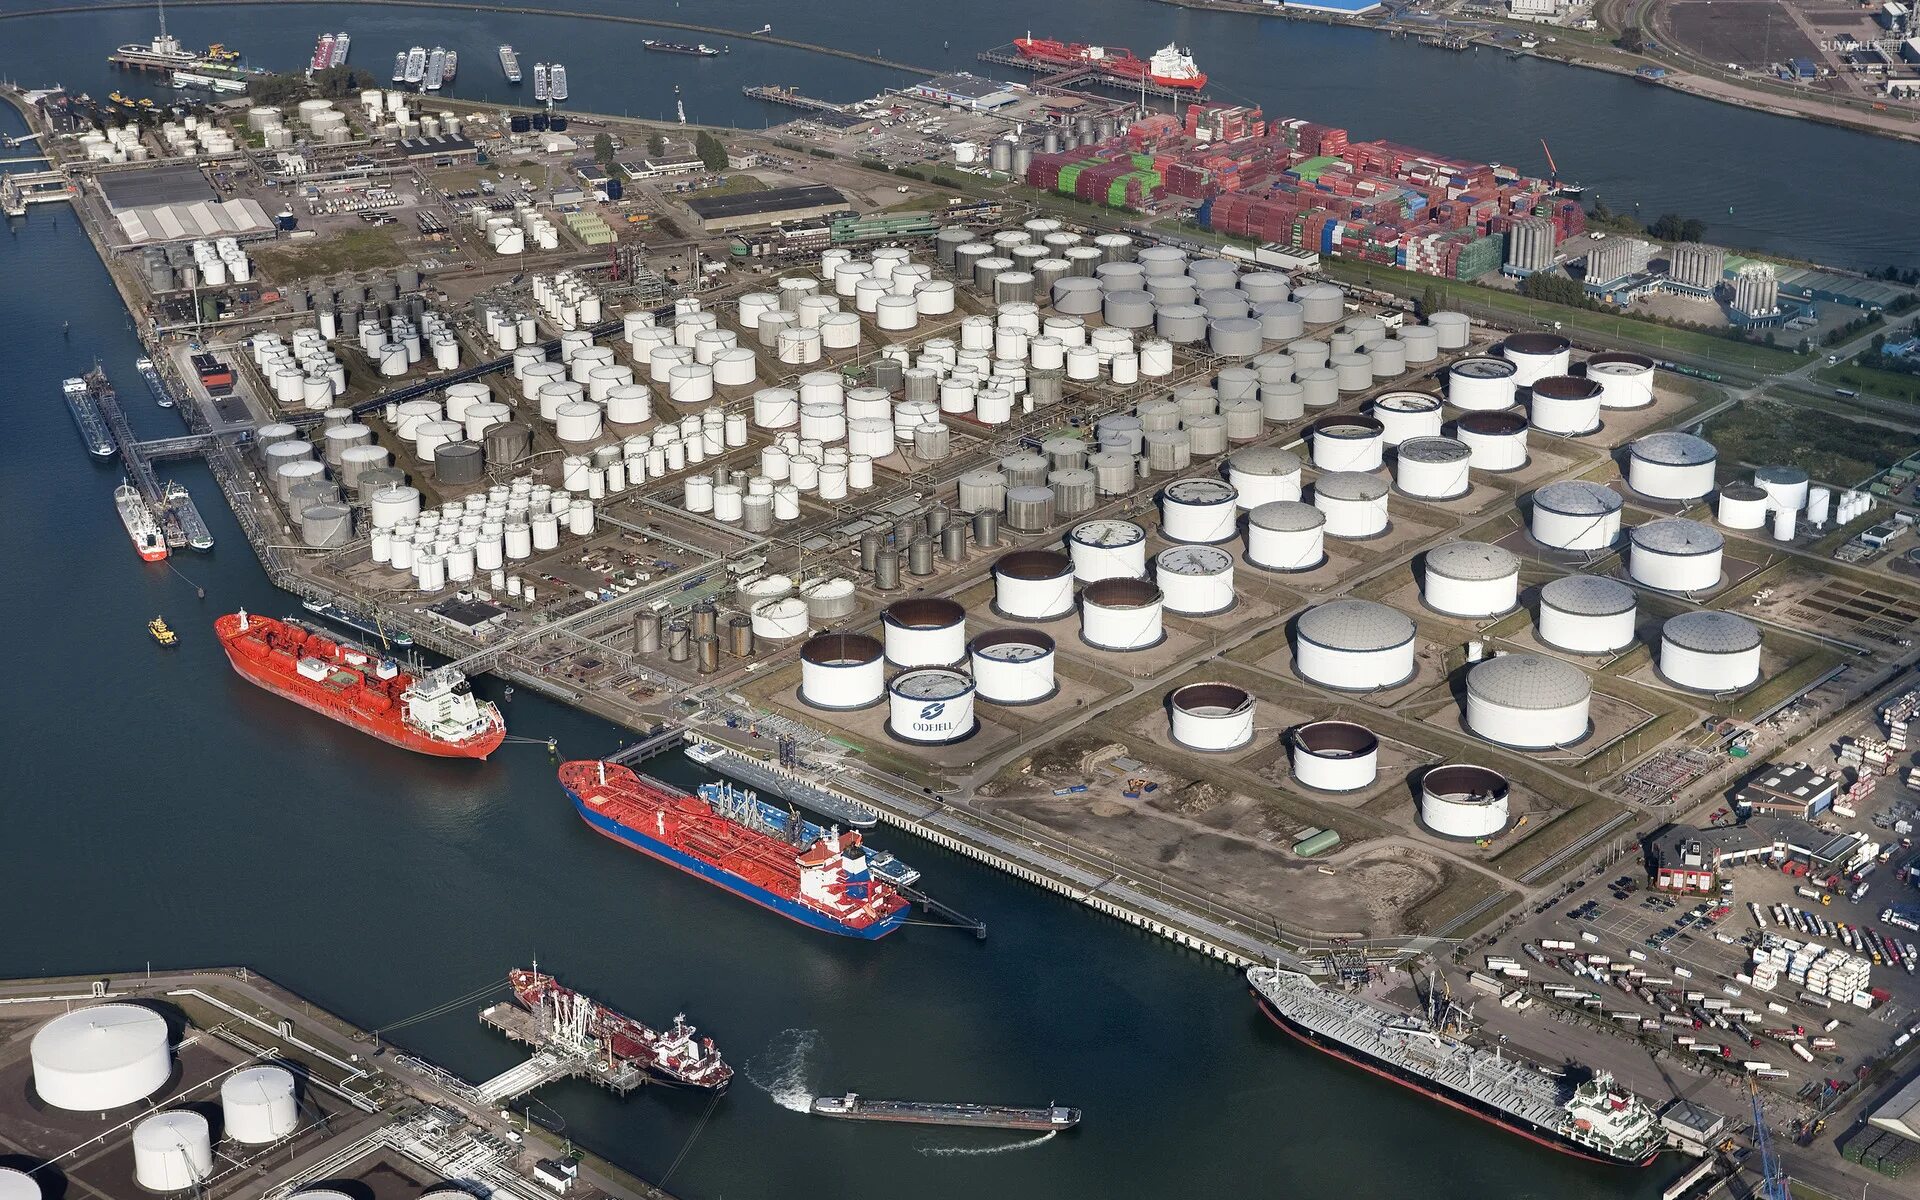 Включи порти. Нефтяной порт Роттердам. Нидерланды порт Роттердам. Нефтеналивной терминал порта Роттердам. Порт Роттердам нефтетанкер.